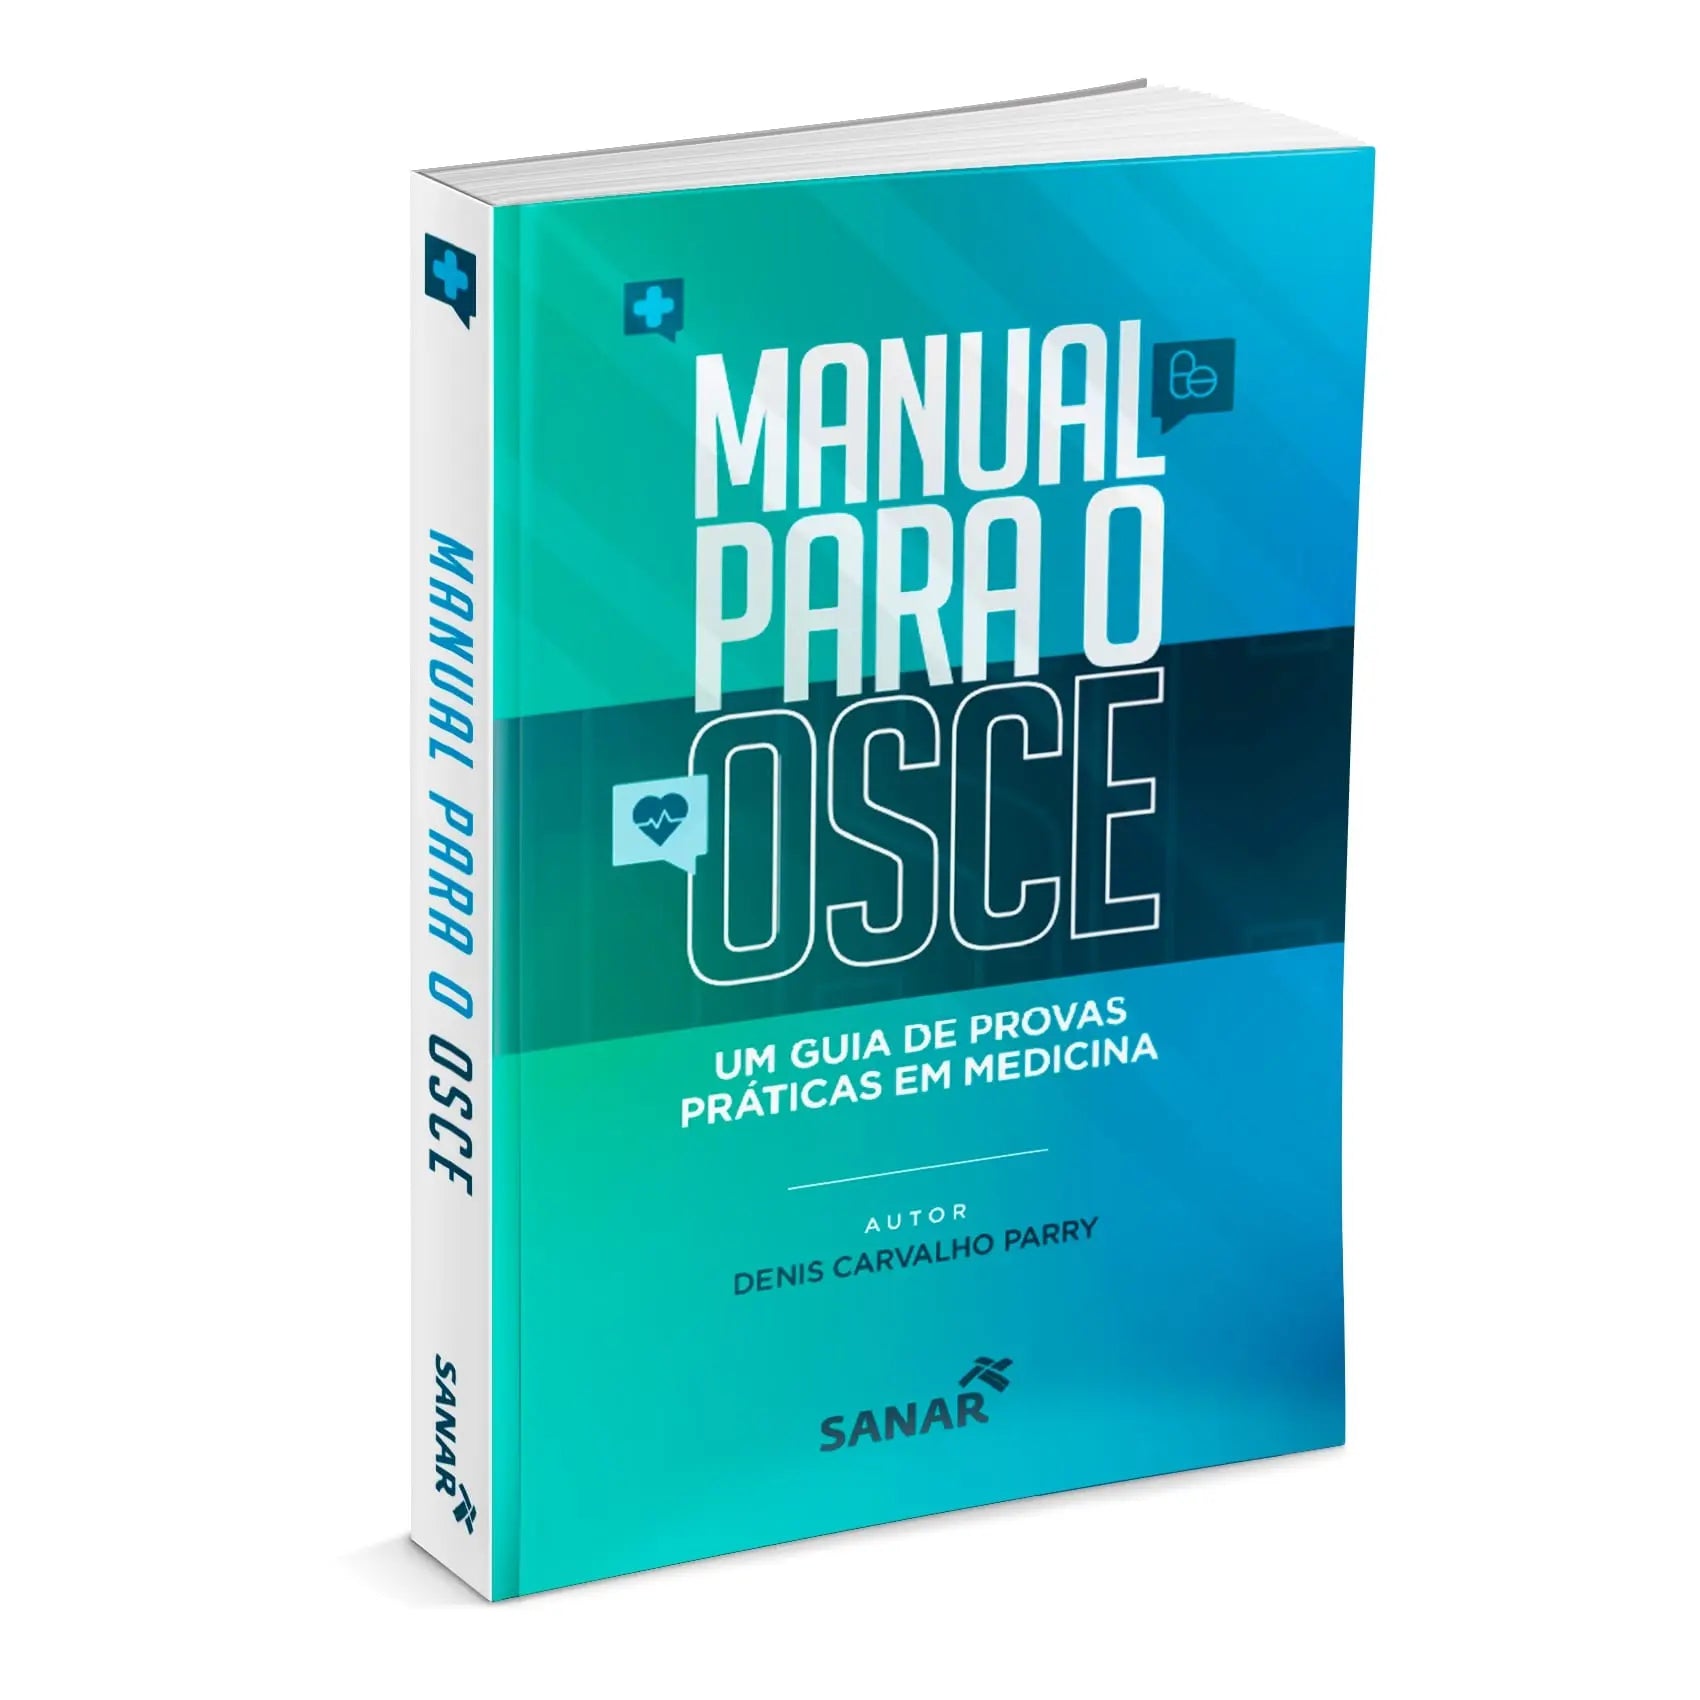 Imagem do livro Manual para o OSCE